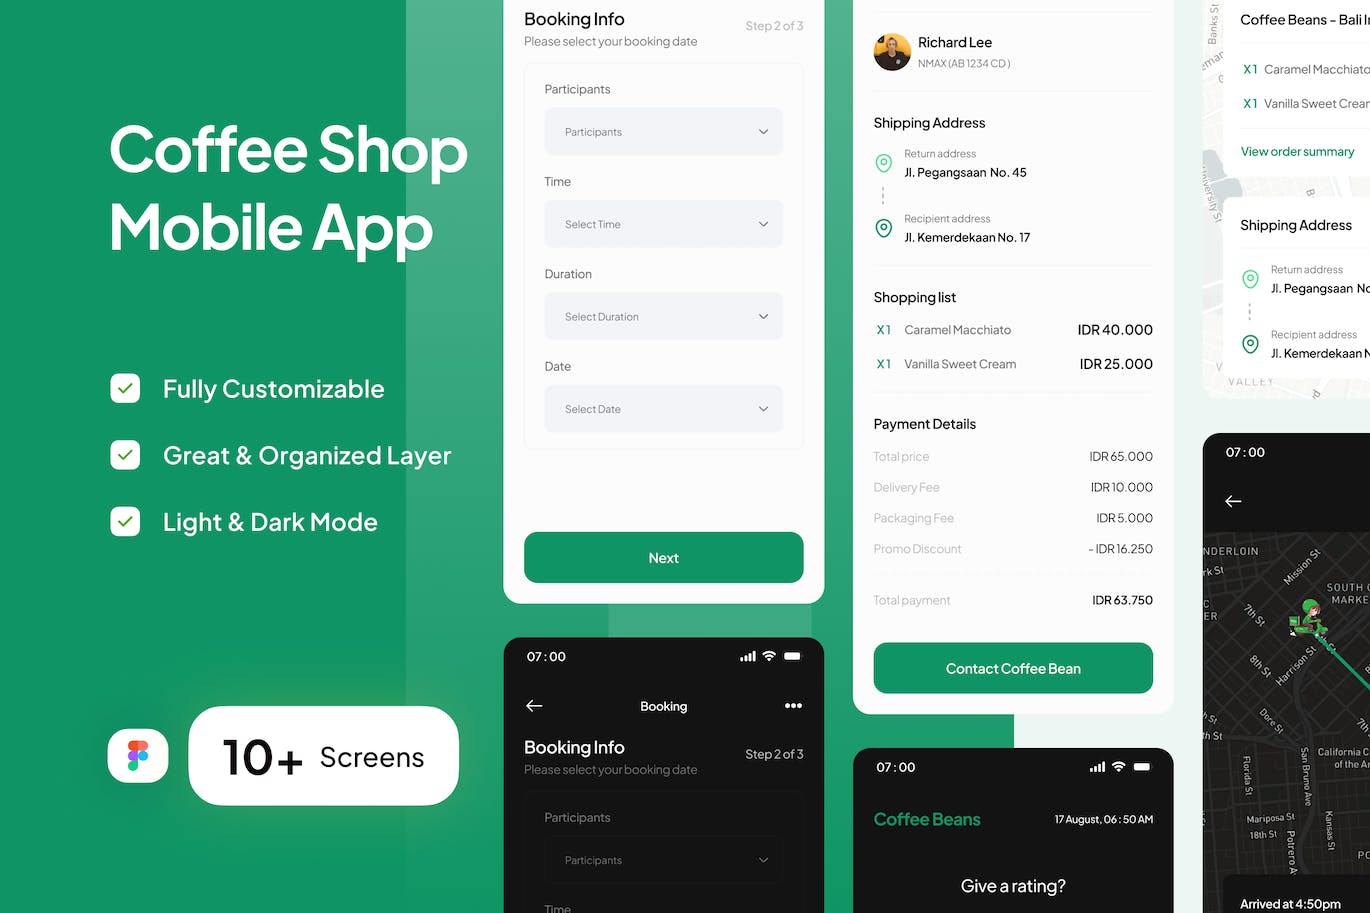 咖啡店移动App应用预订&订单界面设计模板 Coffee Bean – Coffee Shop Mobile App (Part 3) APP UI 第1张